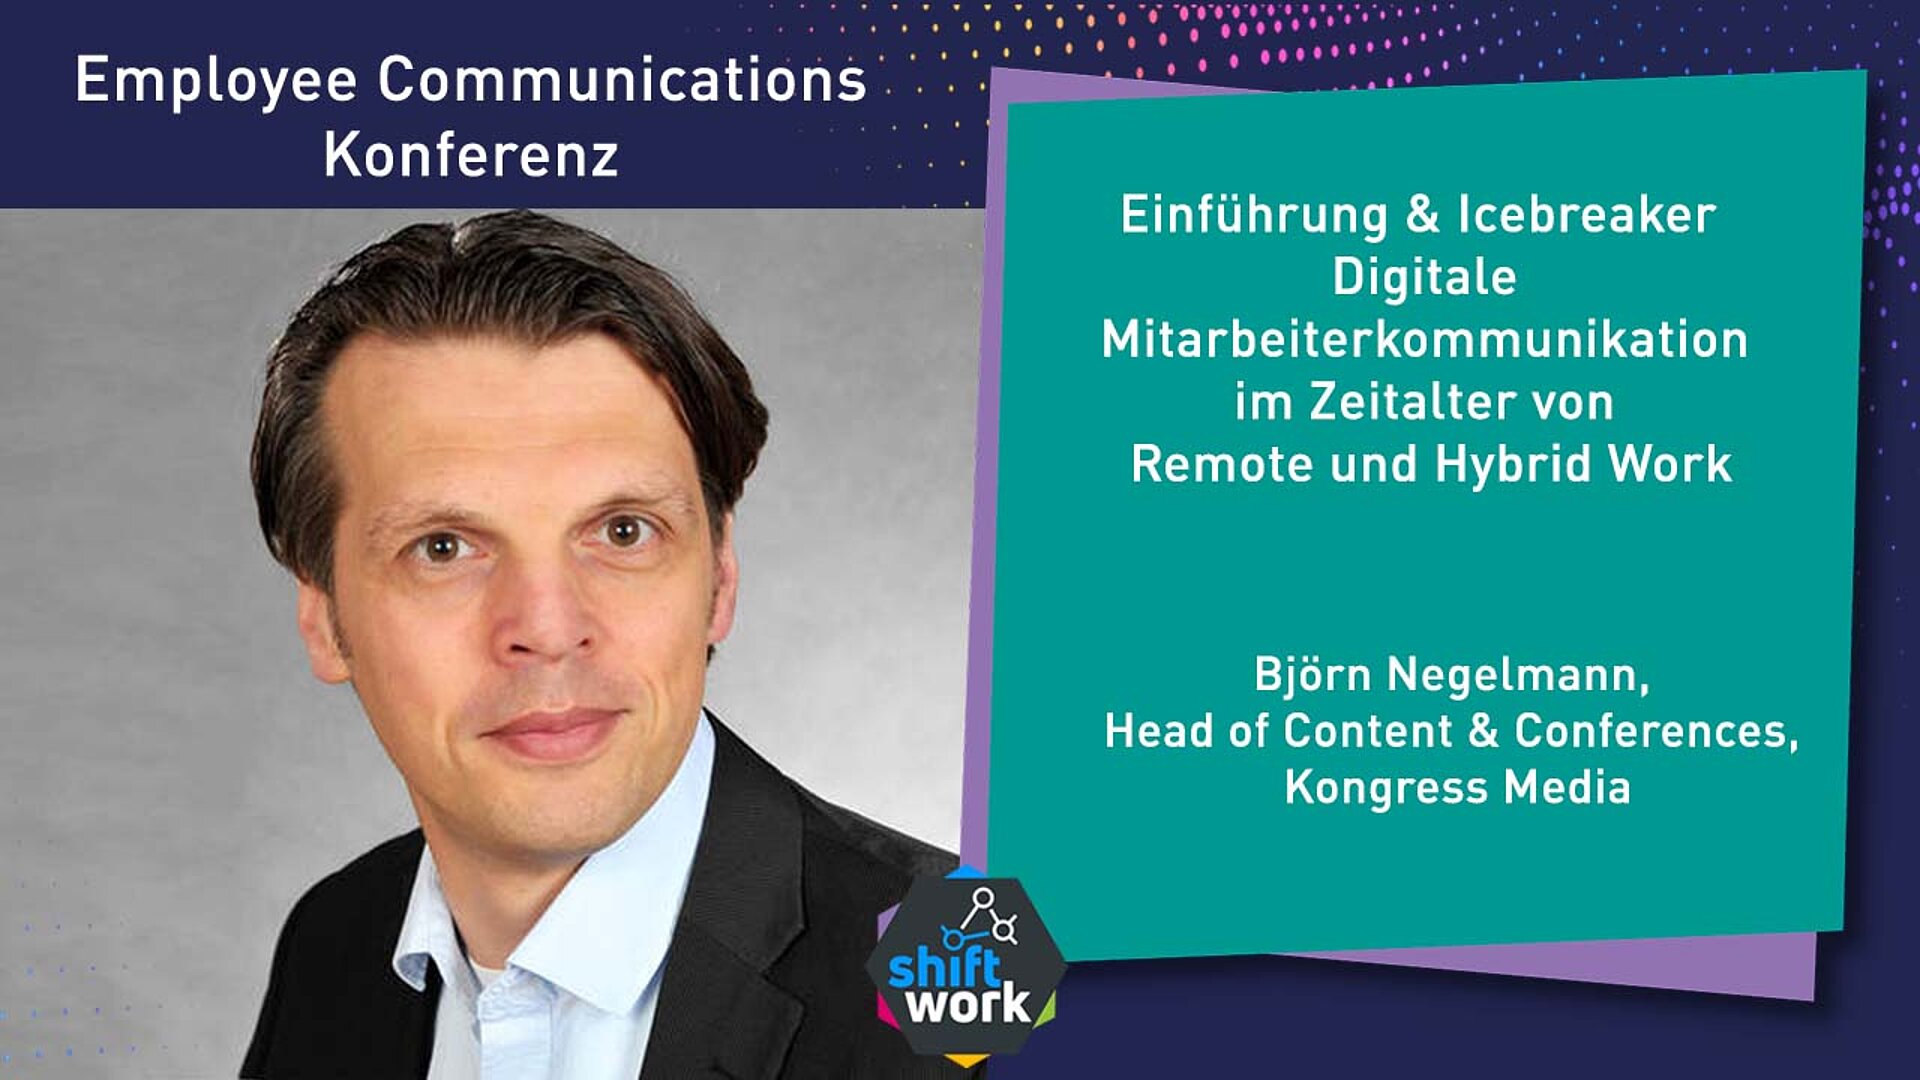 Digitale Mitarbeiterkommunikation im Zeitalter von Remote und Hybrid Work